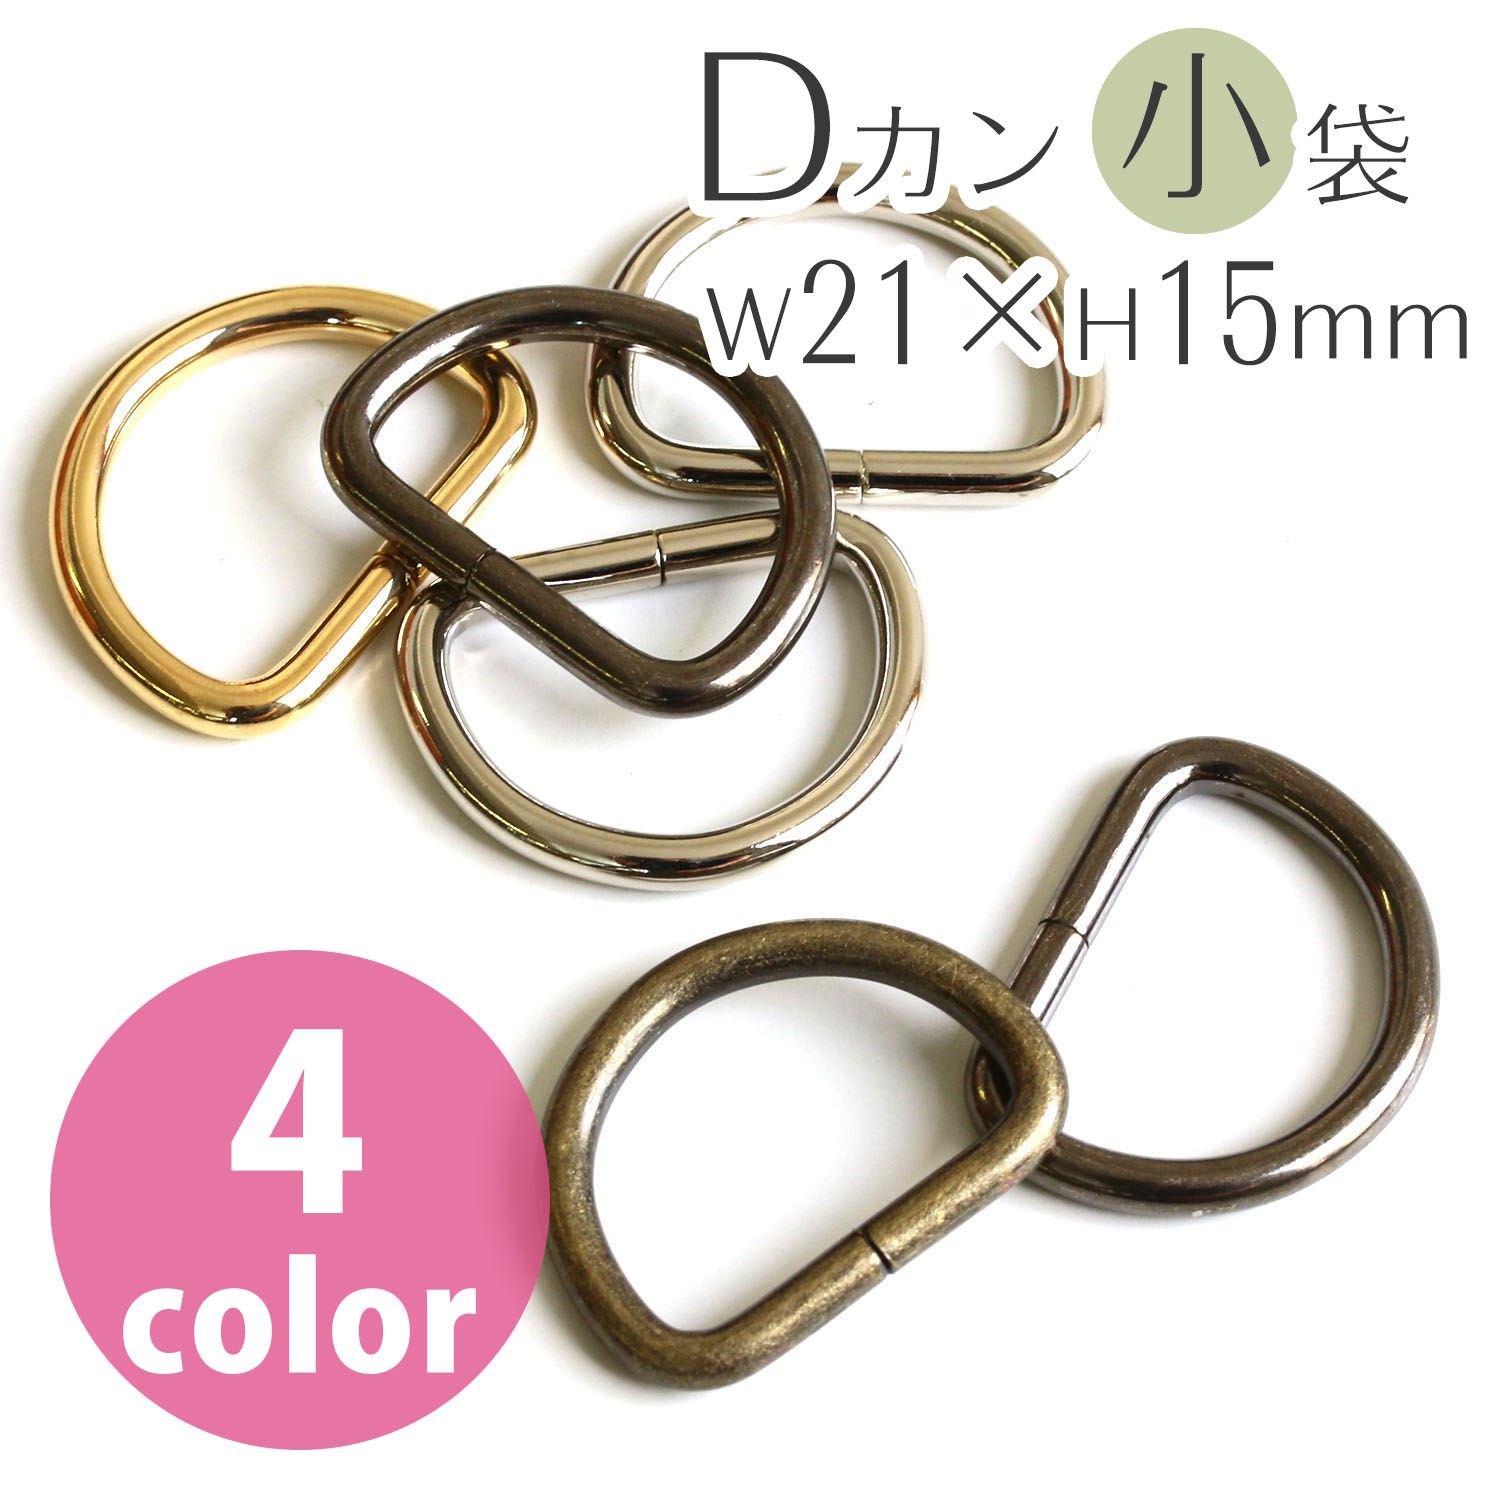 D-Ring 21 x 15mm, diameter 3mm (bag)